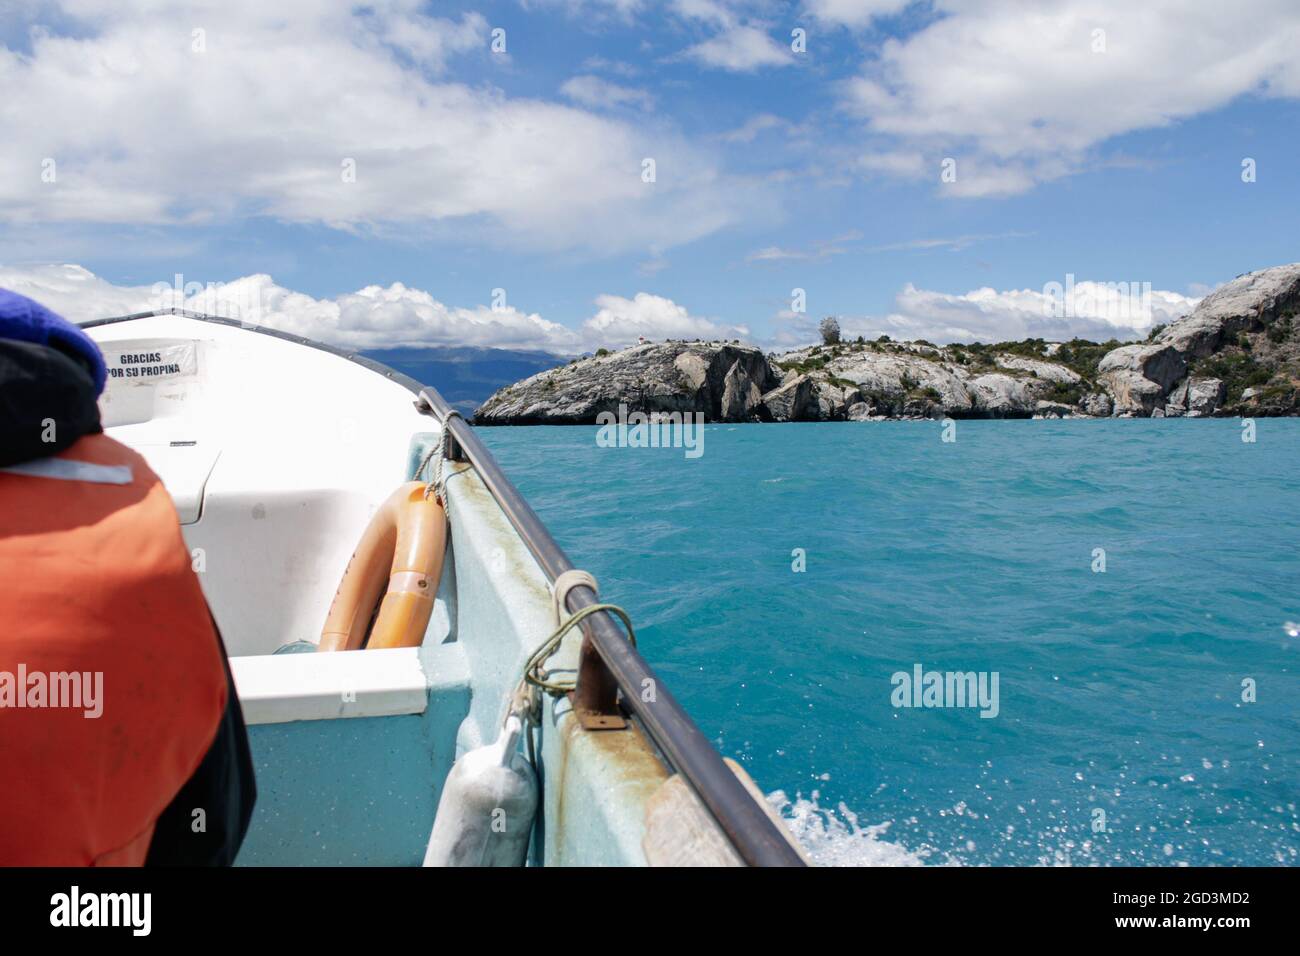 Un bateau traverse un lac turquoise. Lago General Carrera, Chili Banque D'Images